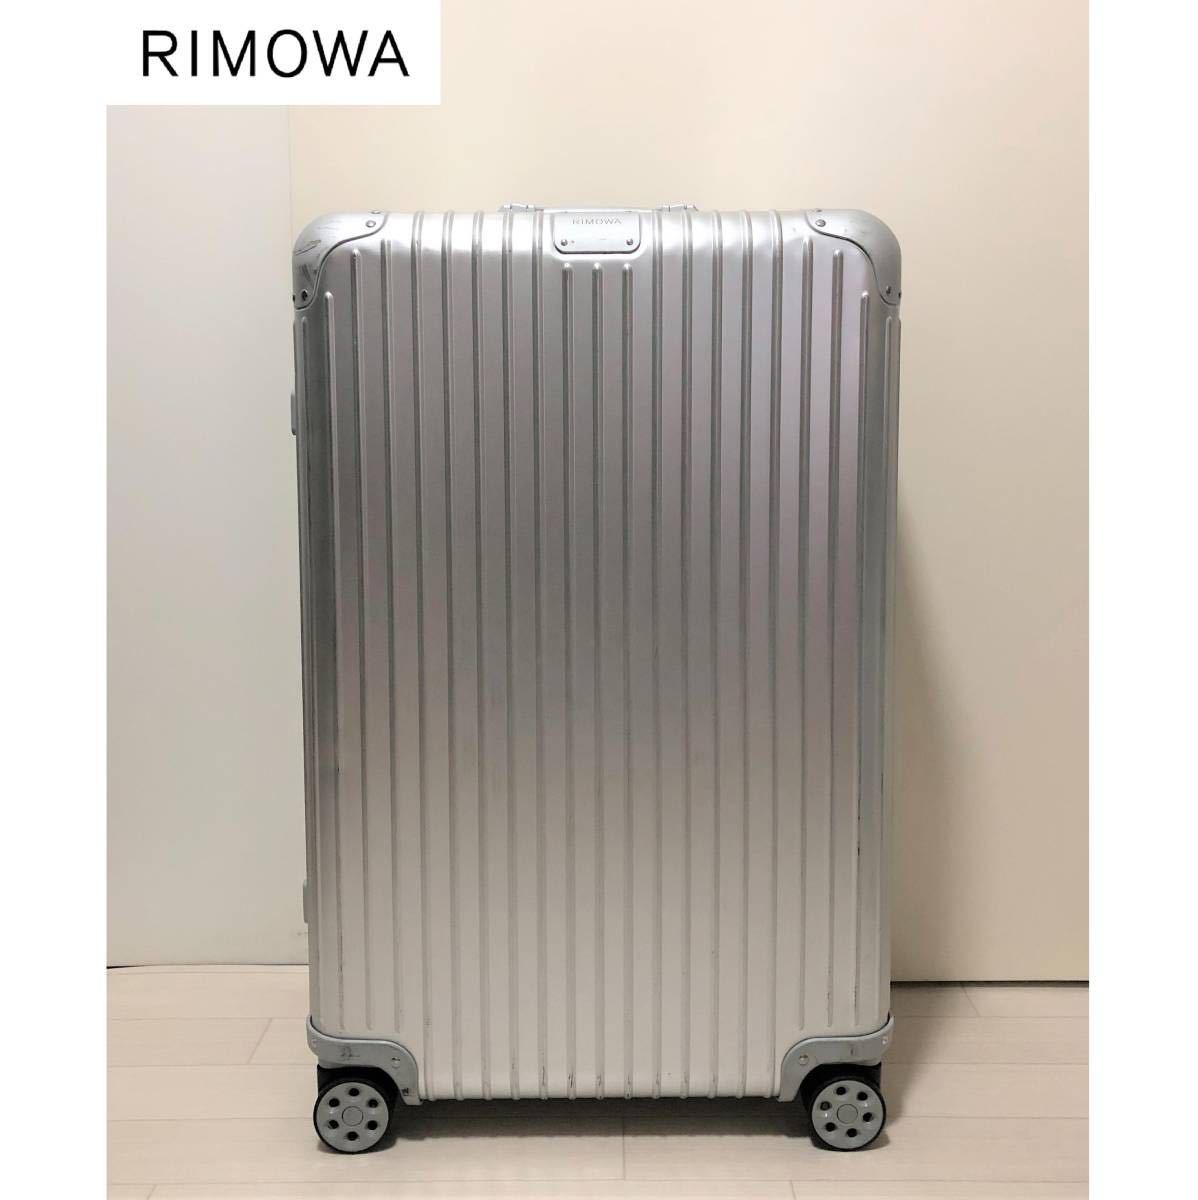 上品なスタイル RIMOWA リモワ スーツケース付属品 ネームタグ シール